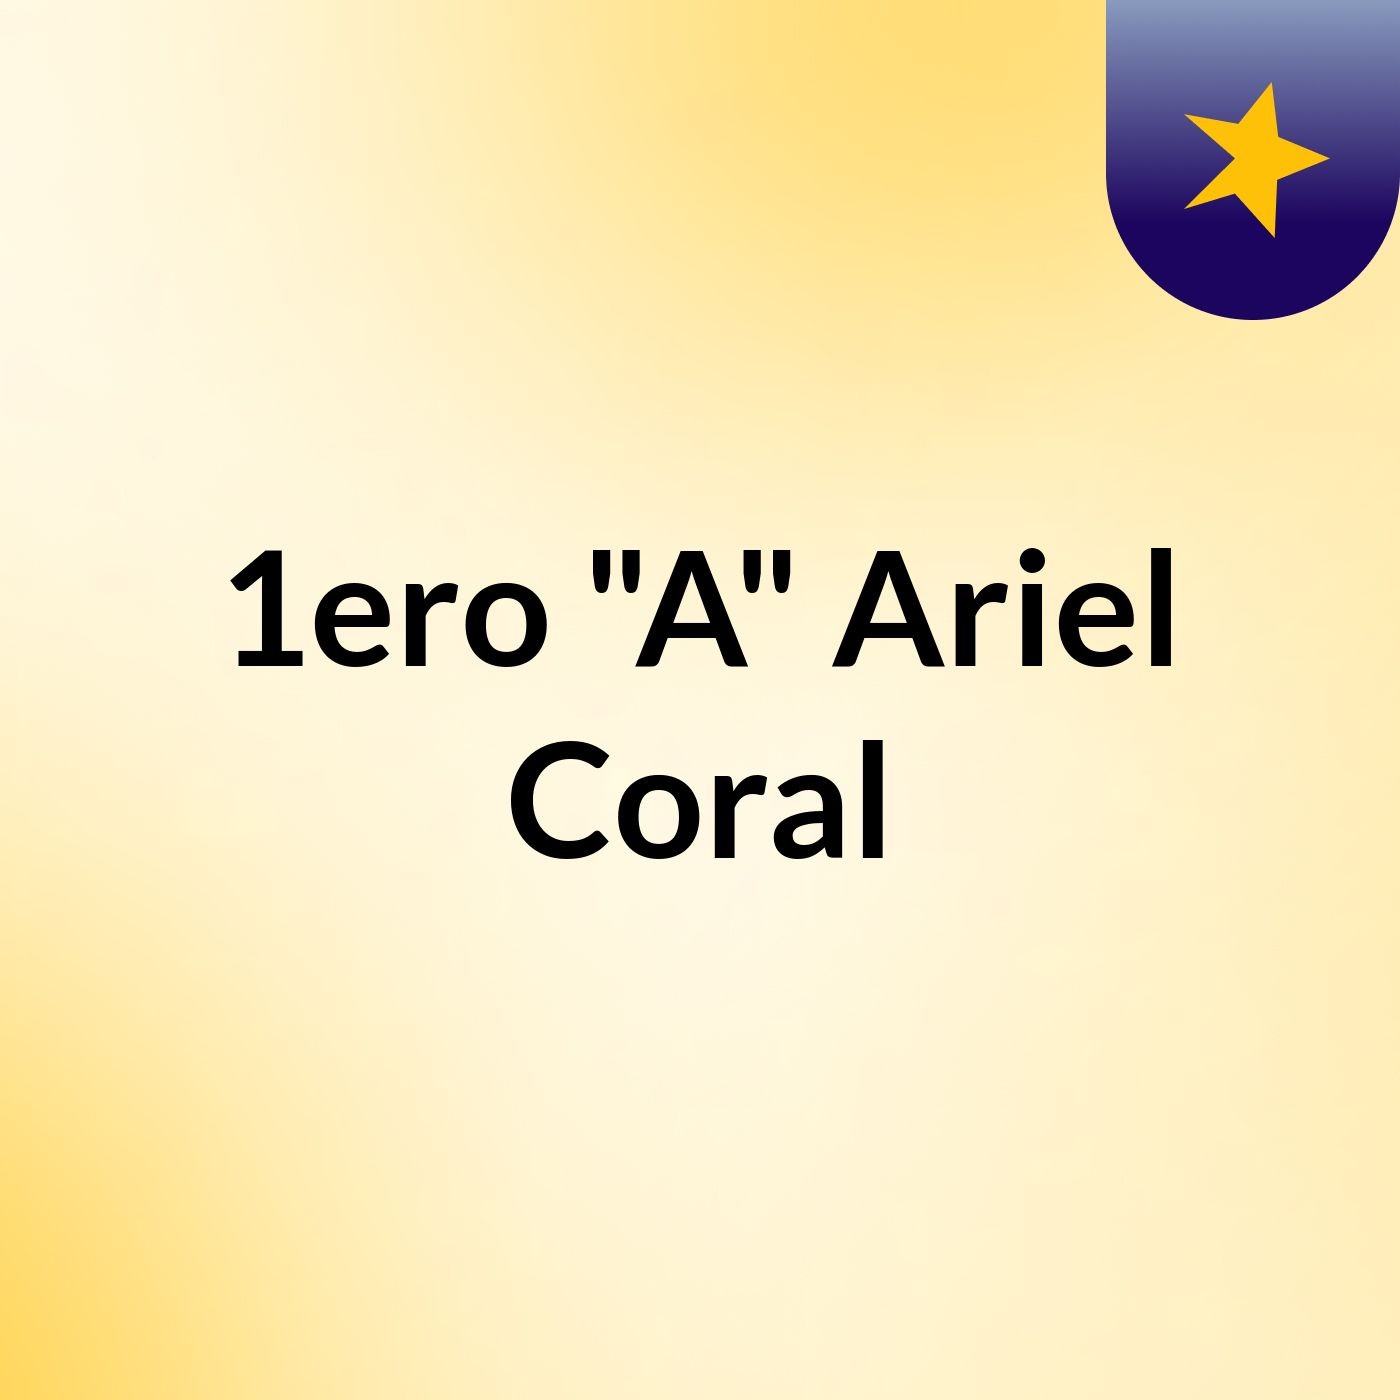 1ero "A" Ariel Coral